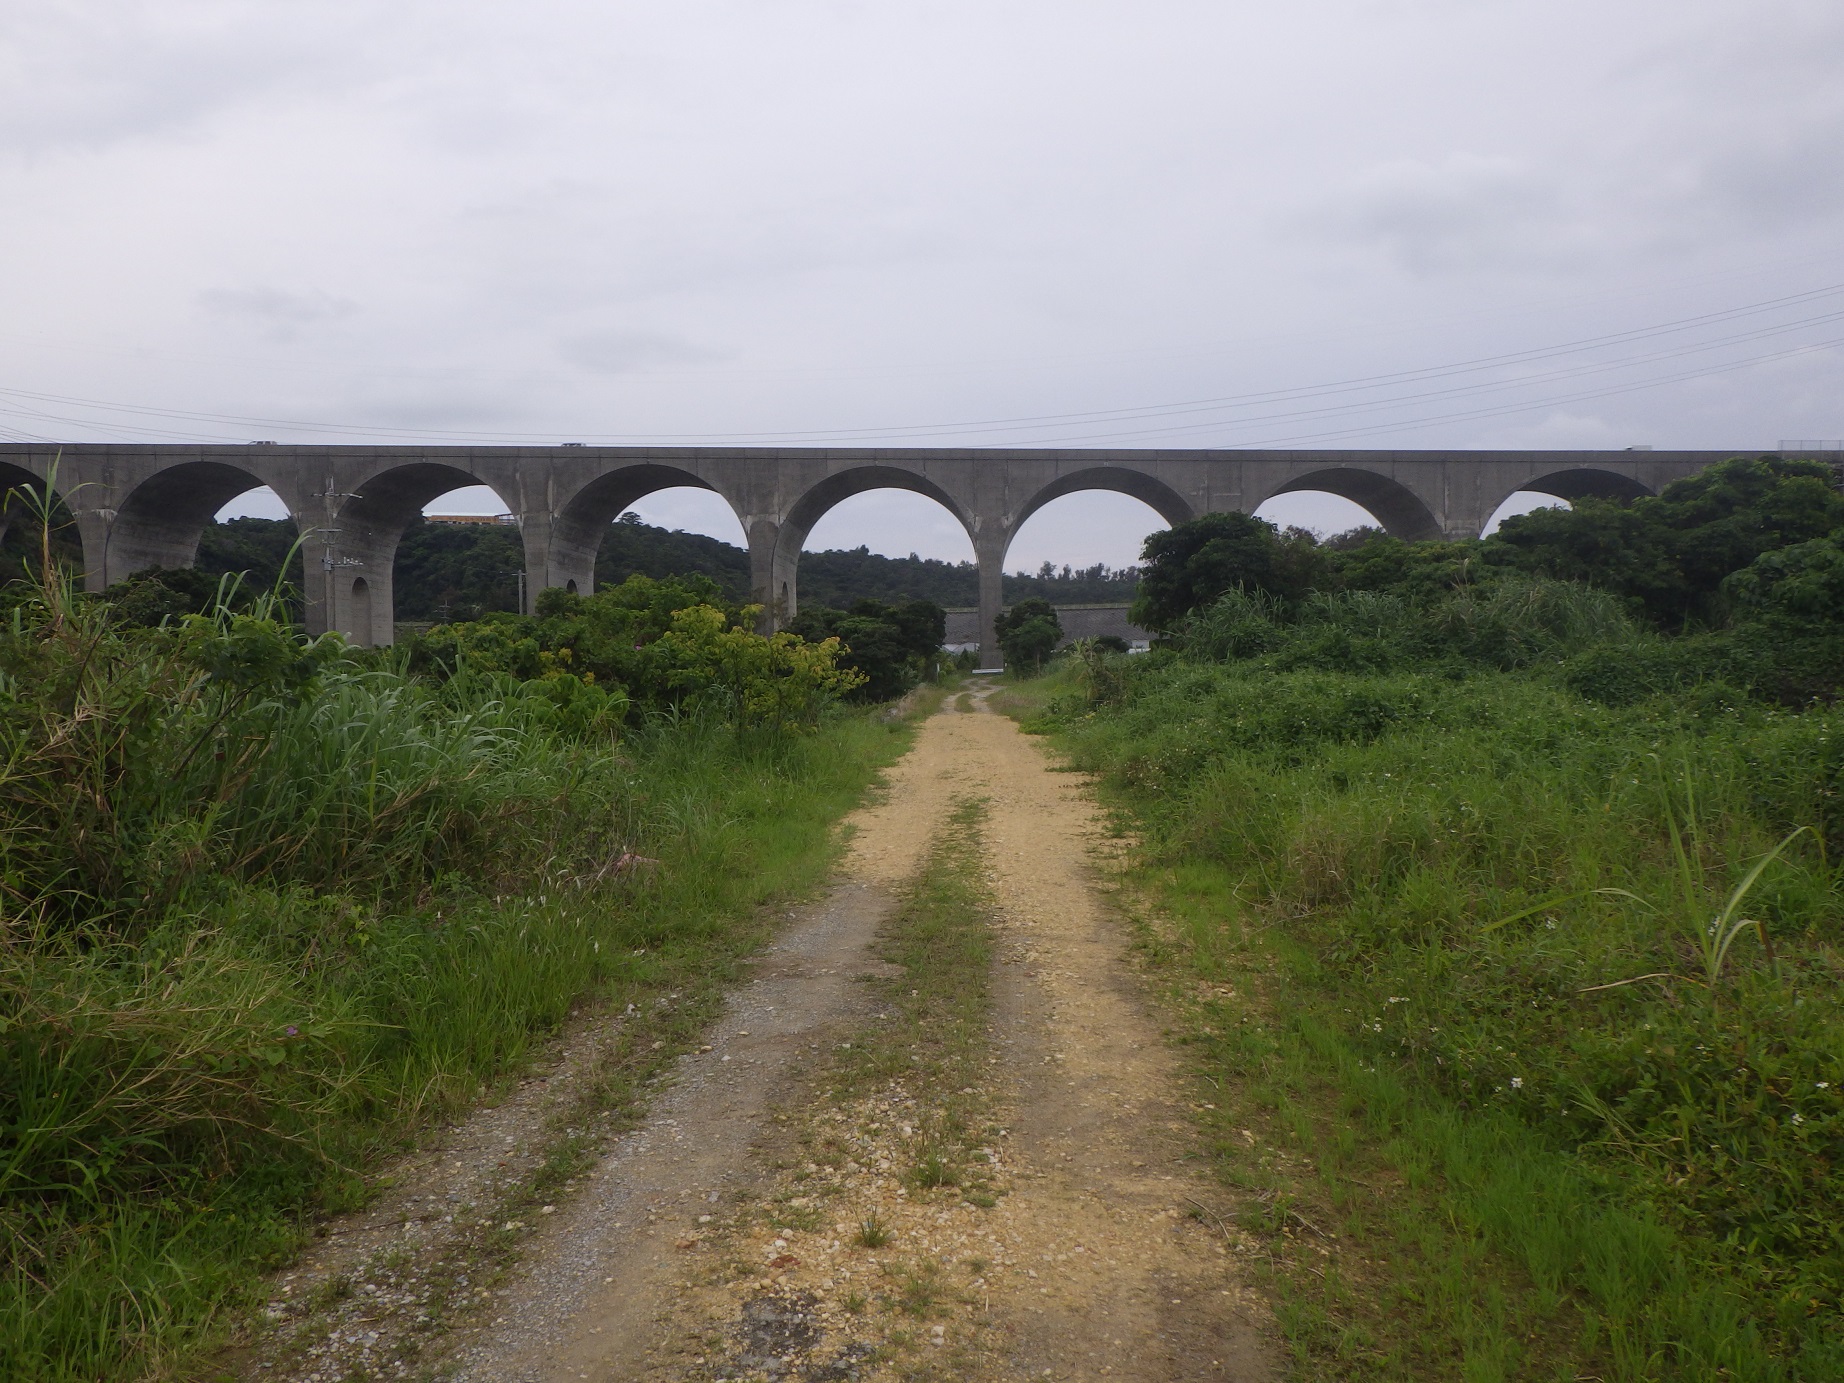 Ishikawa viaduct